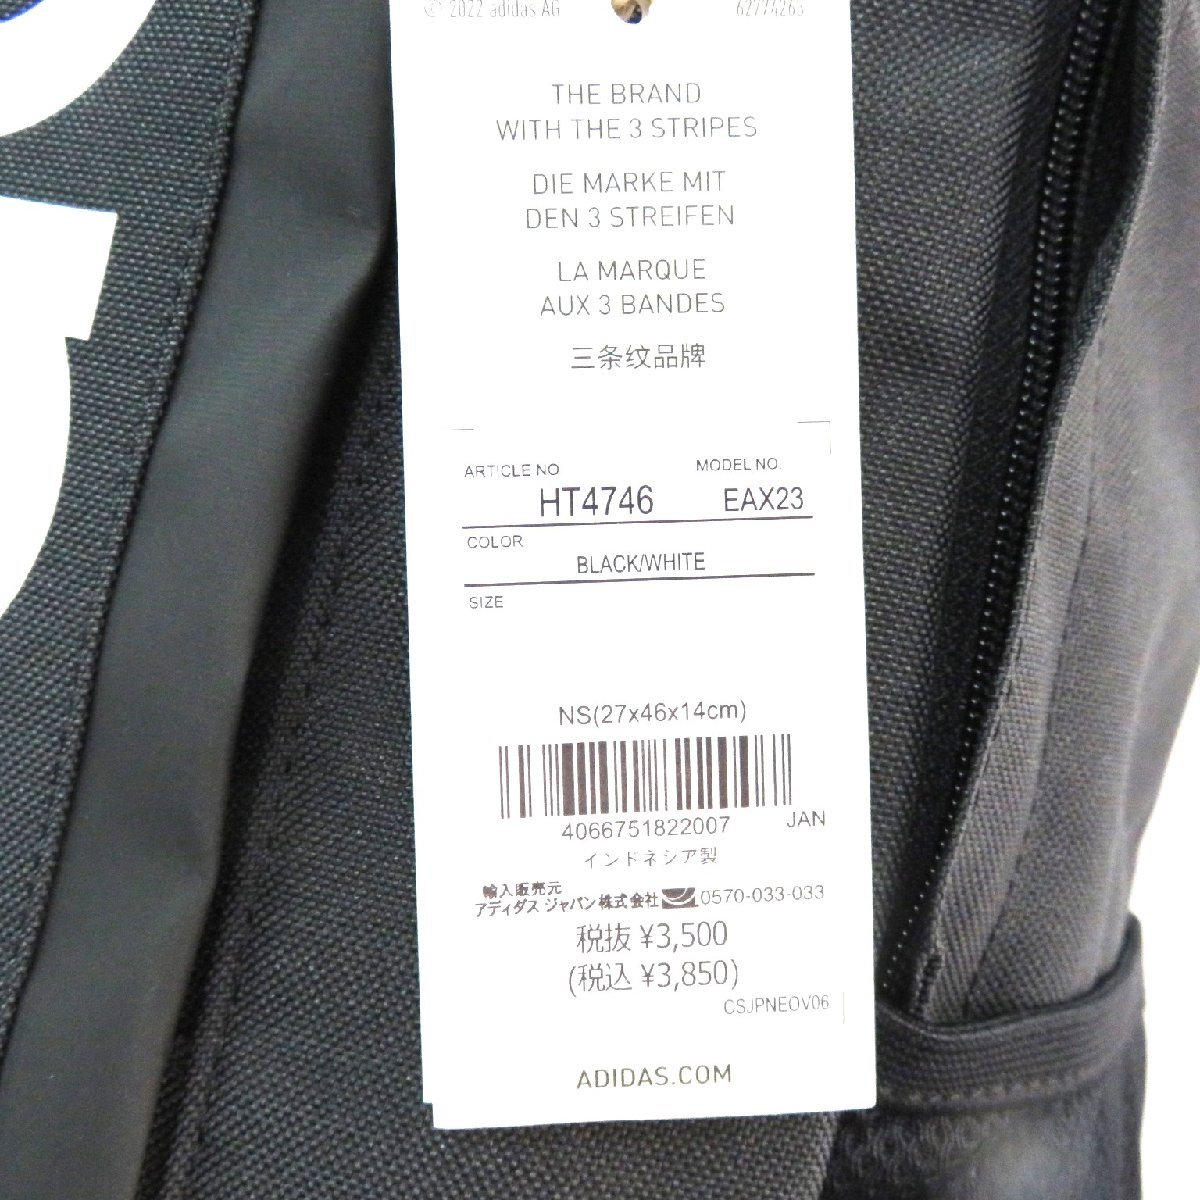 HT4746 черный новый товар популярный adidas Adidas рюкзак повседневный рюкзак 27cm черный чёрный цвет обычная цена 3500 иен без налогов большая вместимость мужской женский 